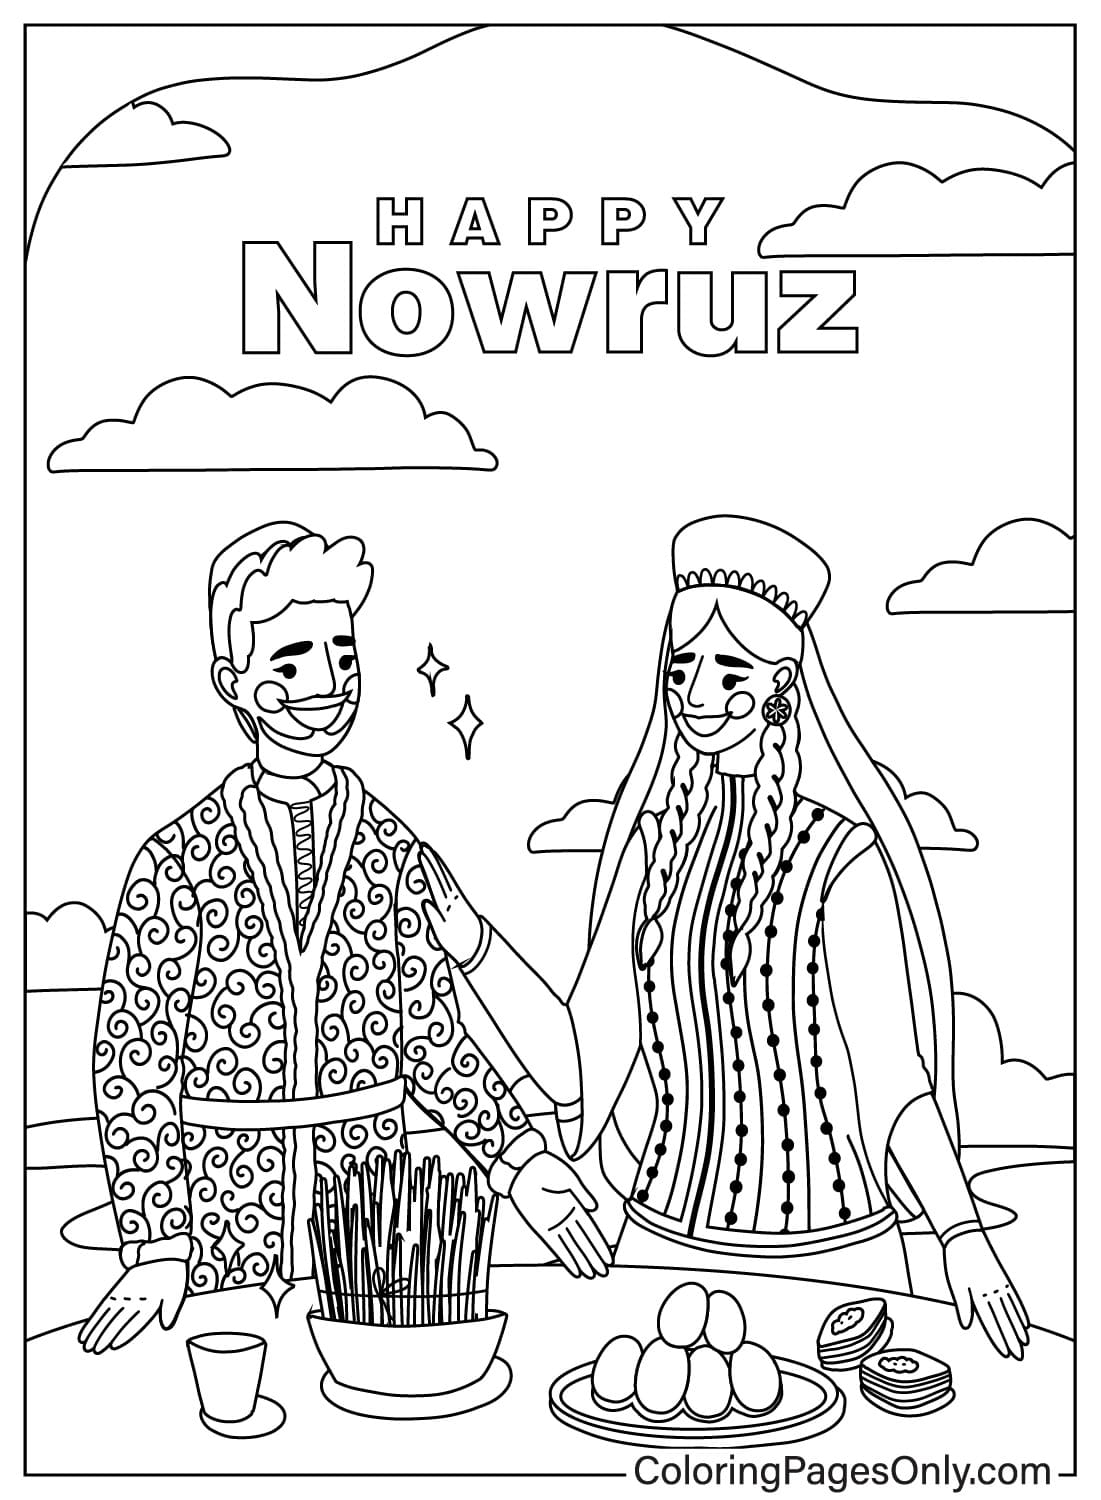 Feuille de coloriage Happy Nowruz dessinée de la Journée internationale de Nowruz